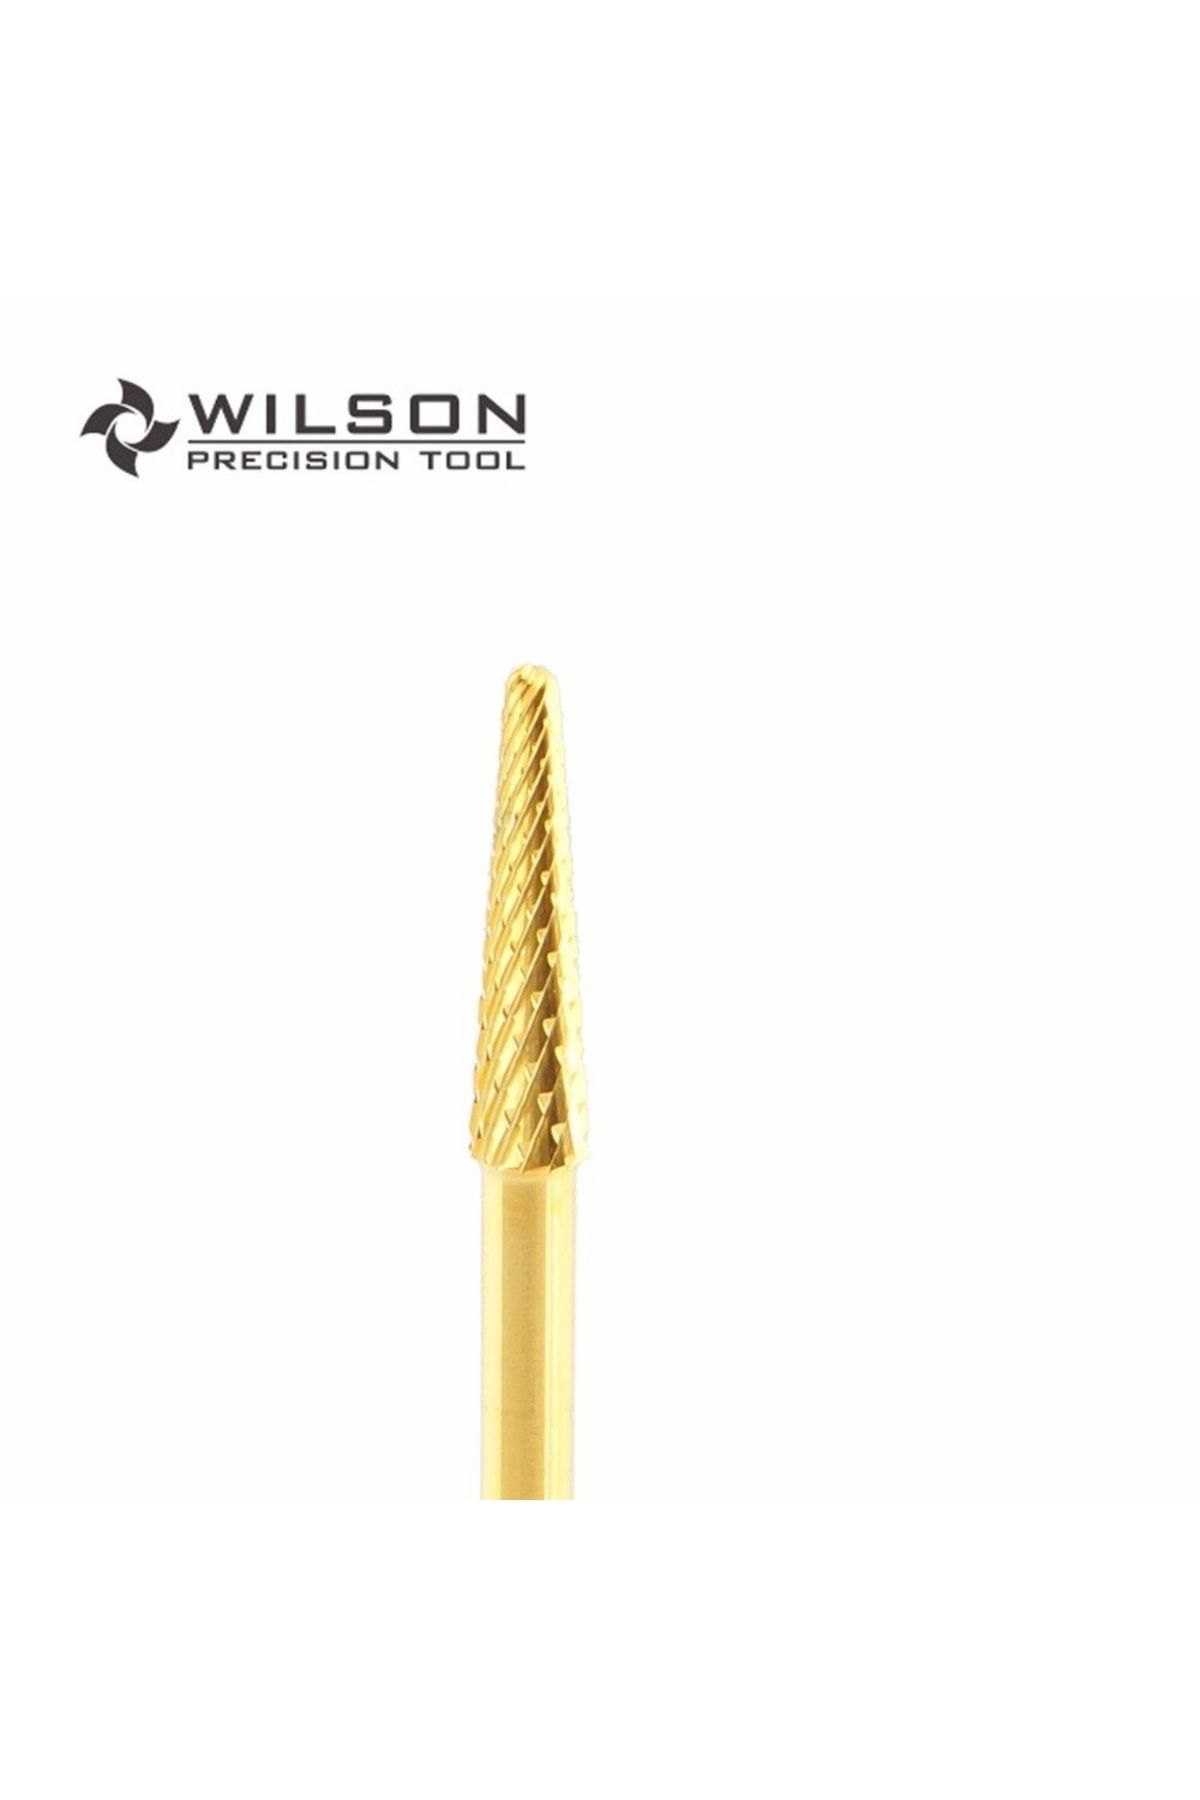 Venalisa Wilson Tungsten Gold Protez Tırnak Törpü Makinası Ucu Freze Ucu Gold